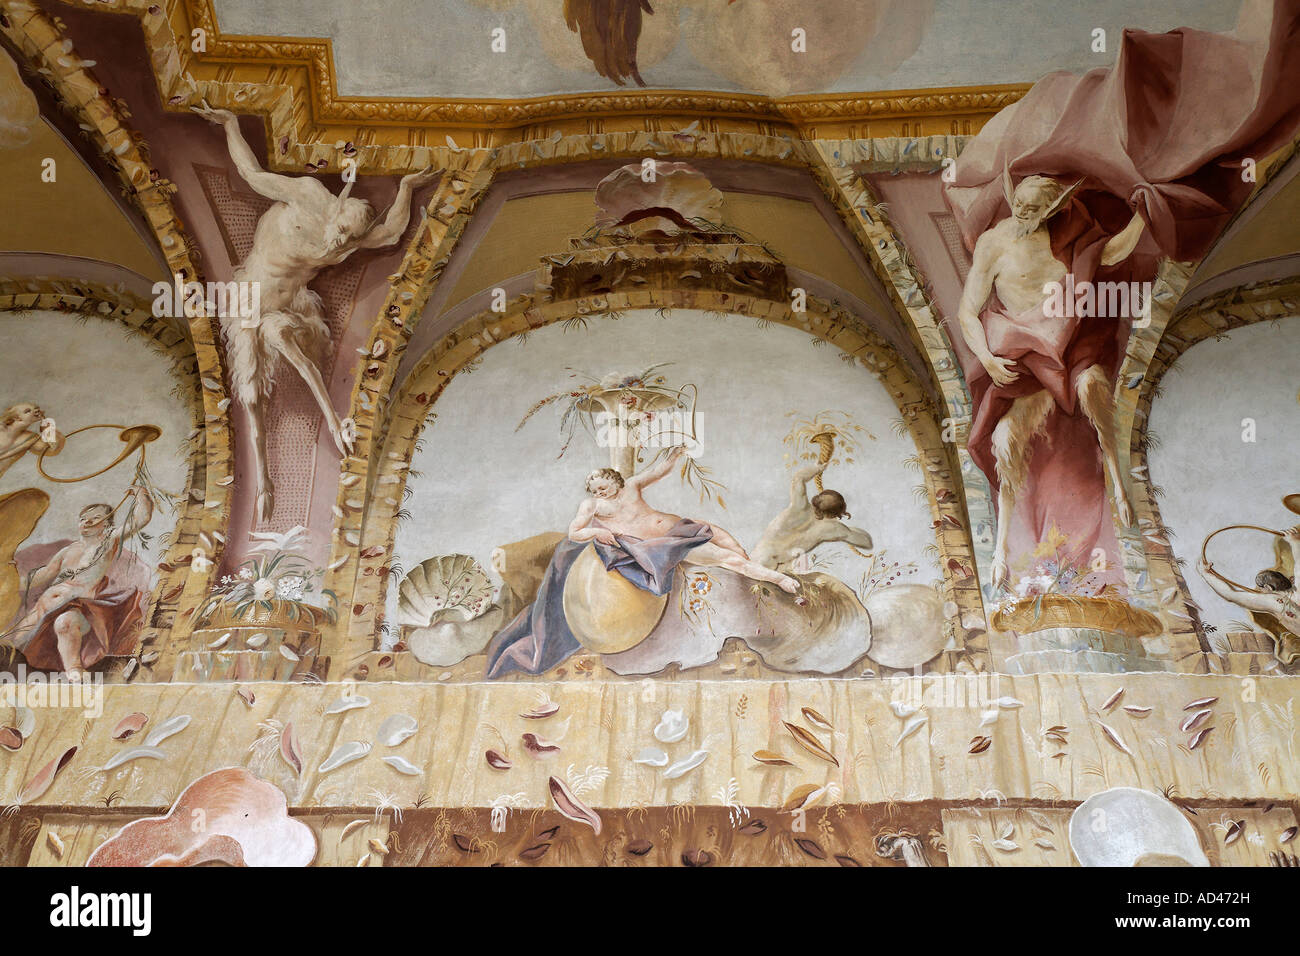 Fresque au plafond grotesque, salle triton, couvent bénédictin d'Altenburg près de Horn, Basse-Autriche Banque D'Images